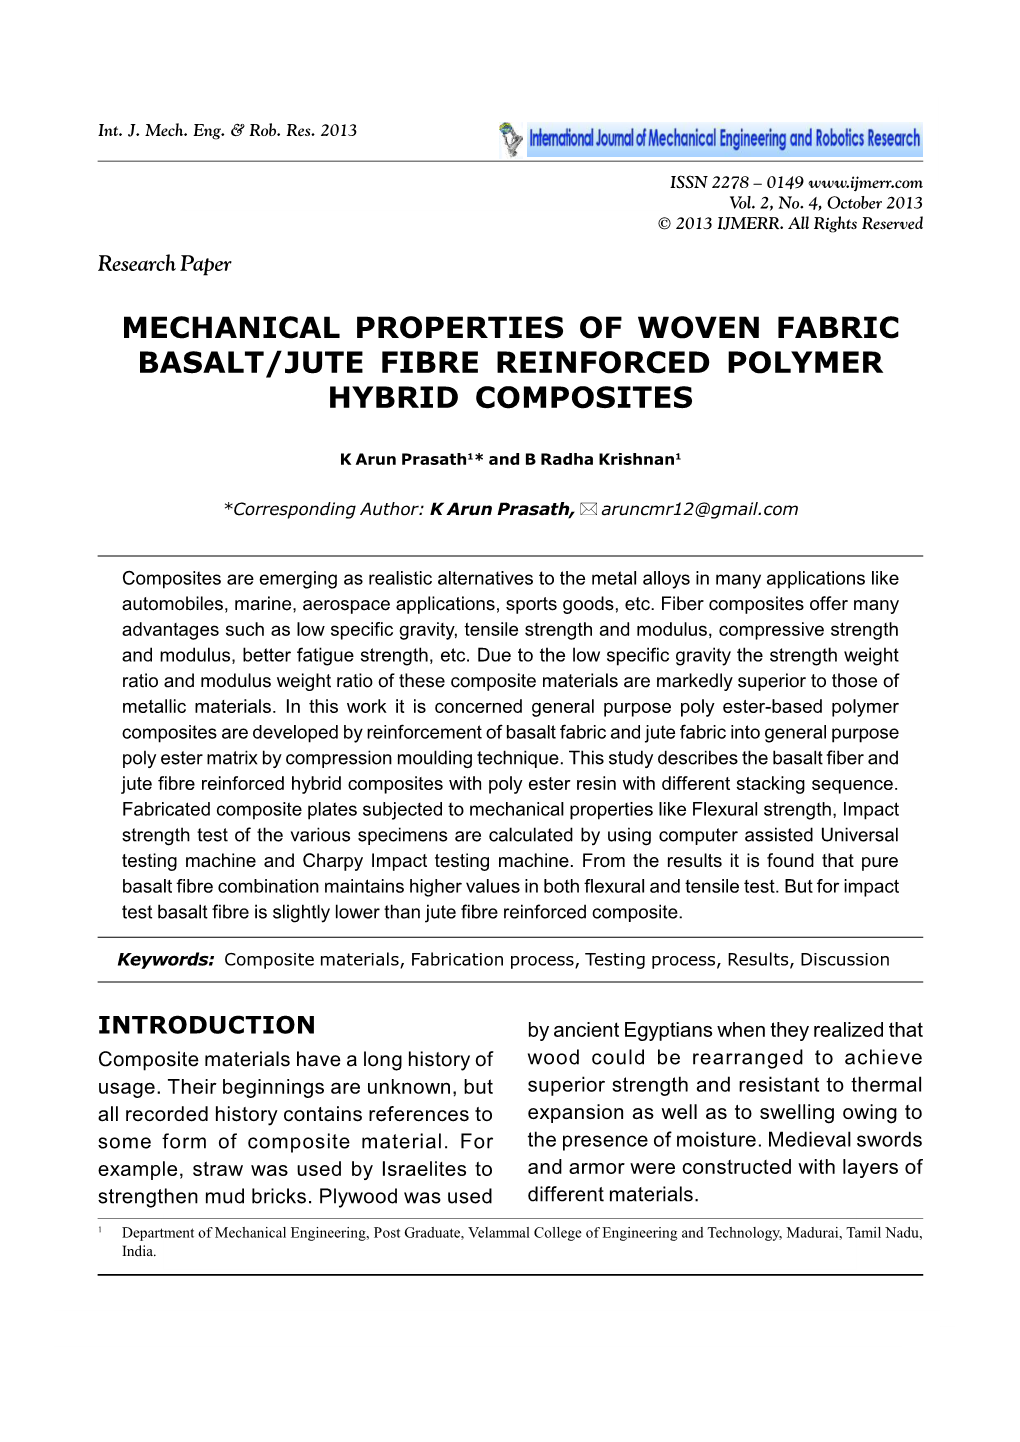 Mechanical Properties of Woven Fabric Basalt/Jute Fibre Reinforced Polymer Hybrid Composites